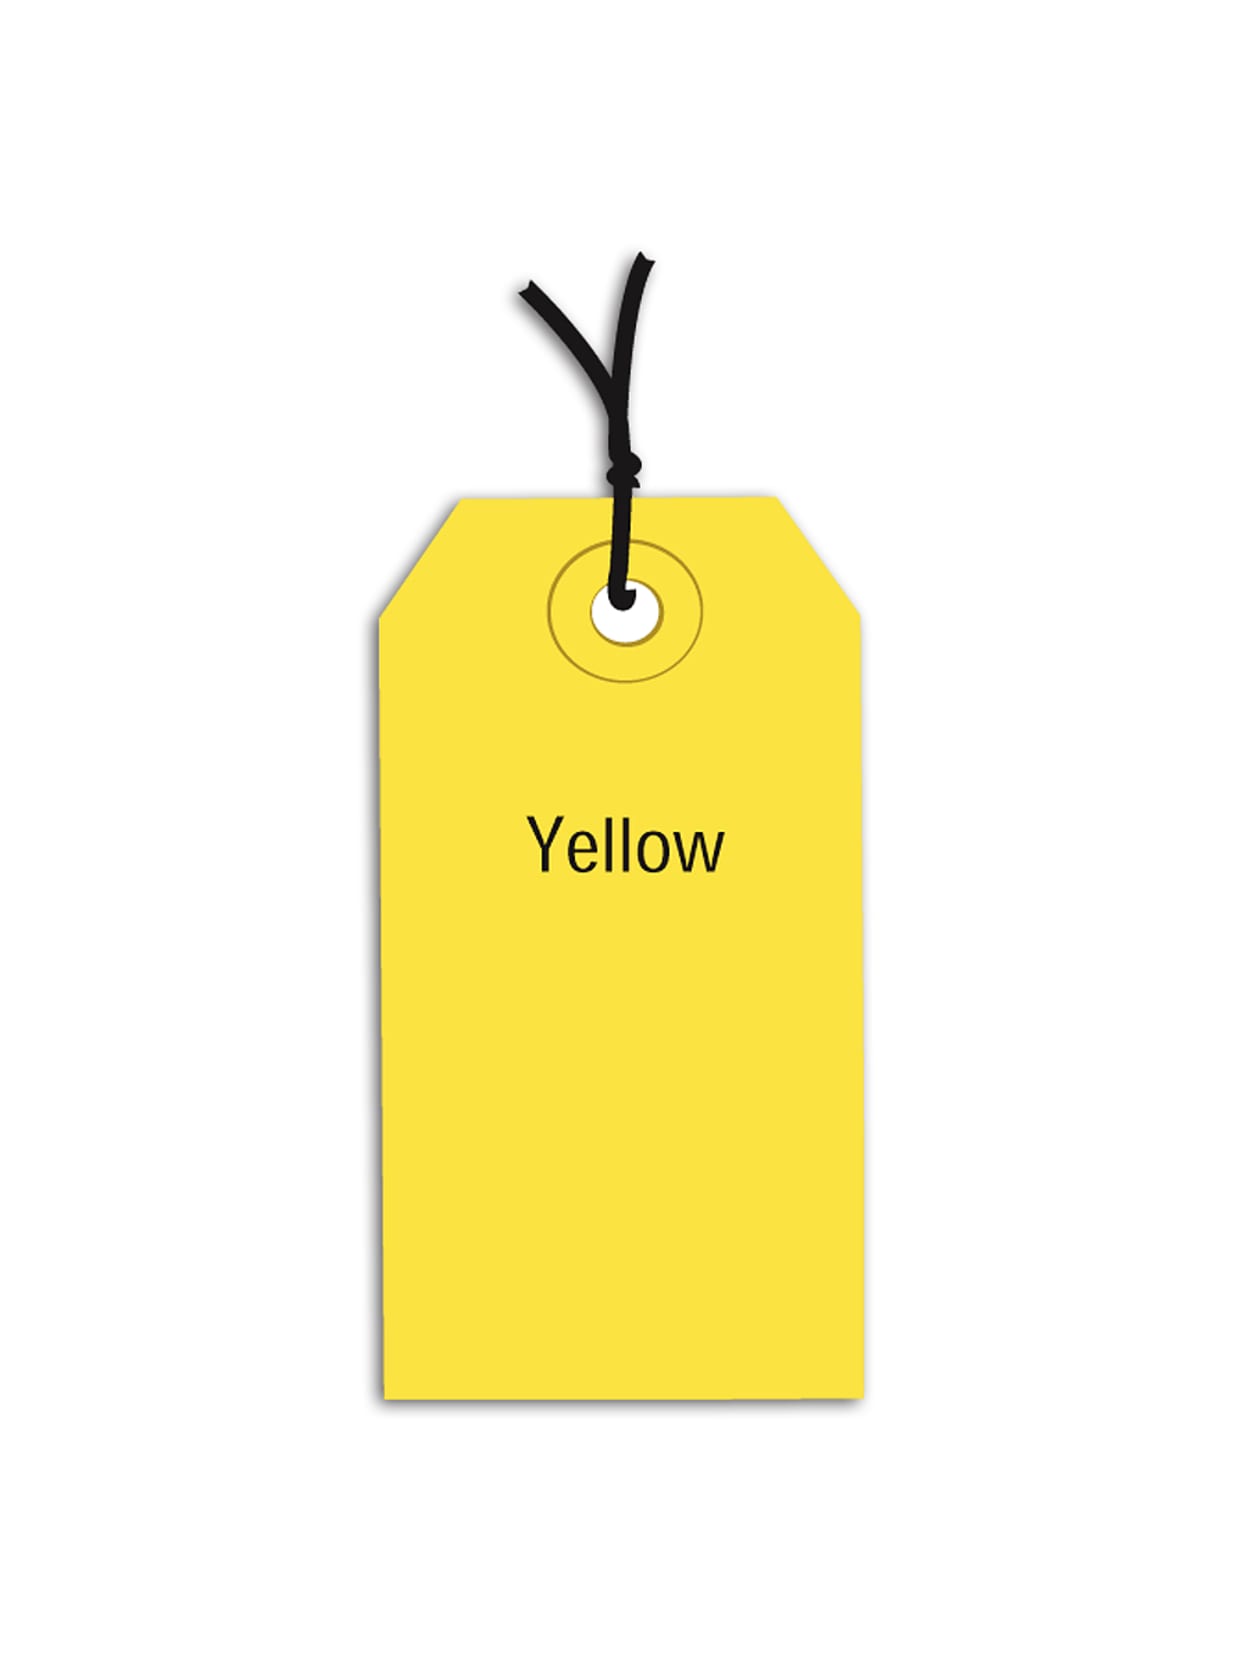 1000  Yellow Merchandise  Perforated Price Tags 1000  5"   Black Loop Locks 